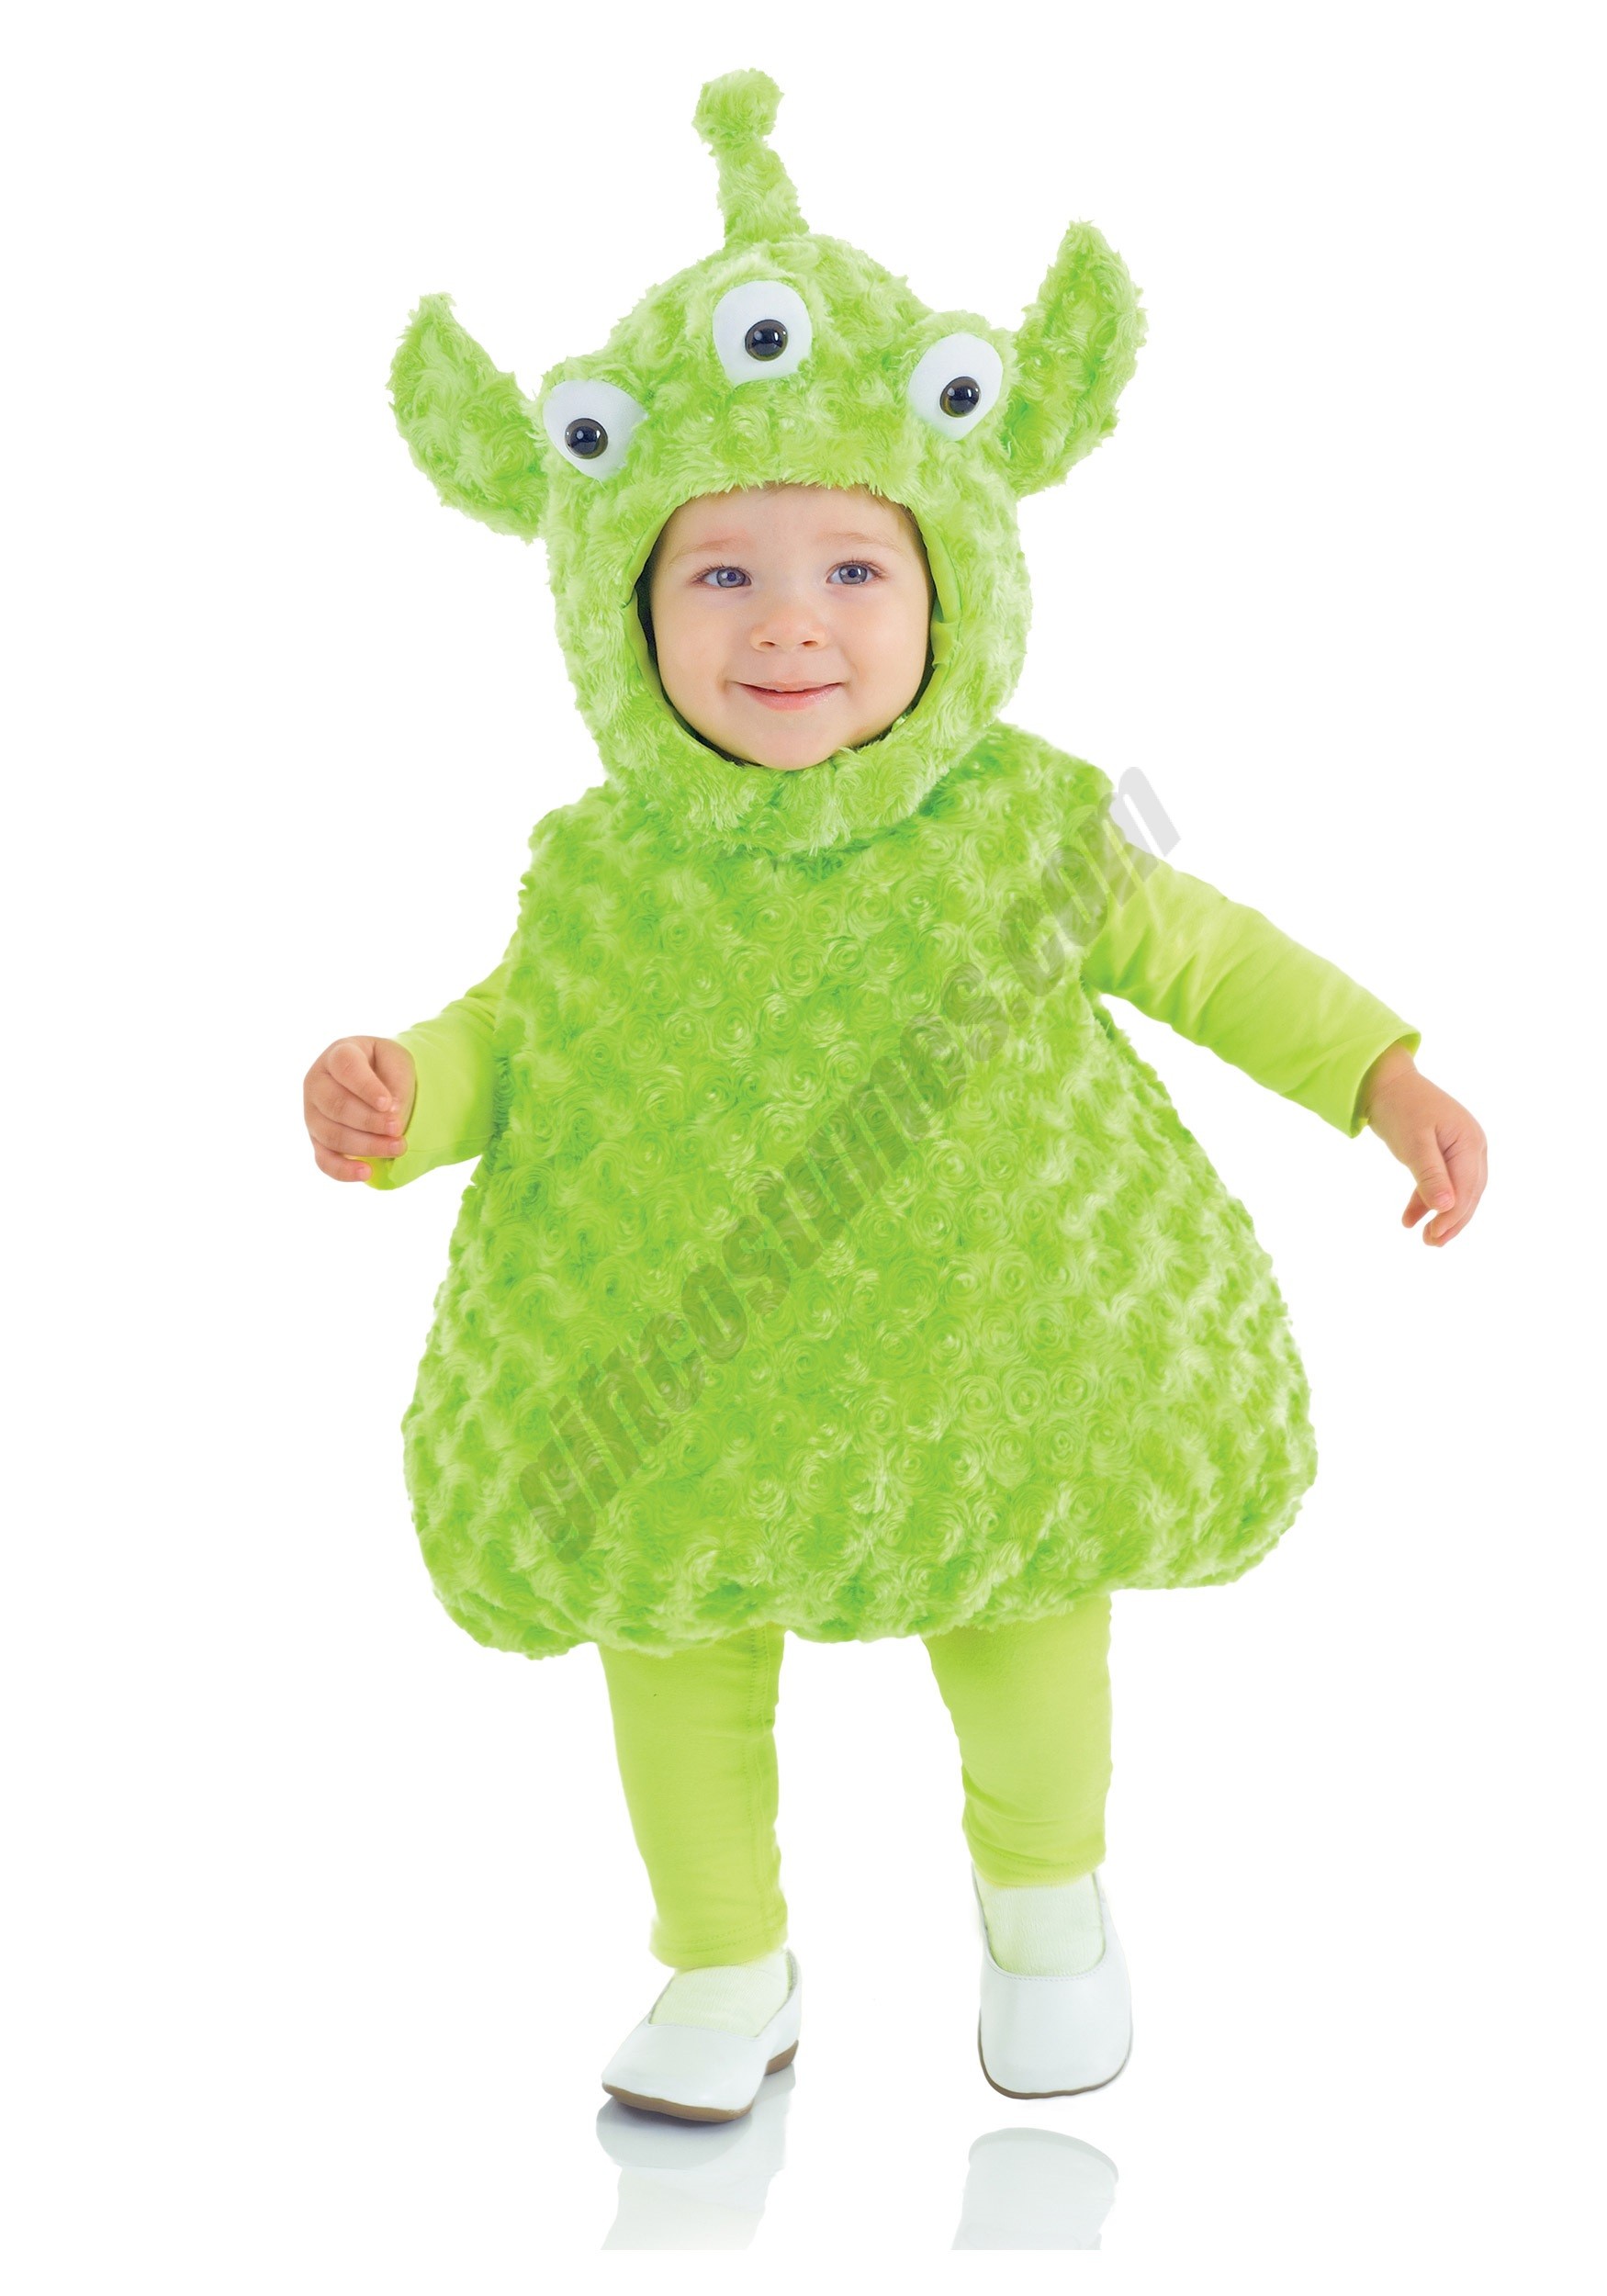 Toddler Alien Costume Promotions - Toddler Alien Costume Promotions